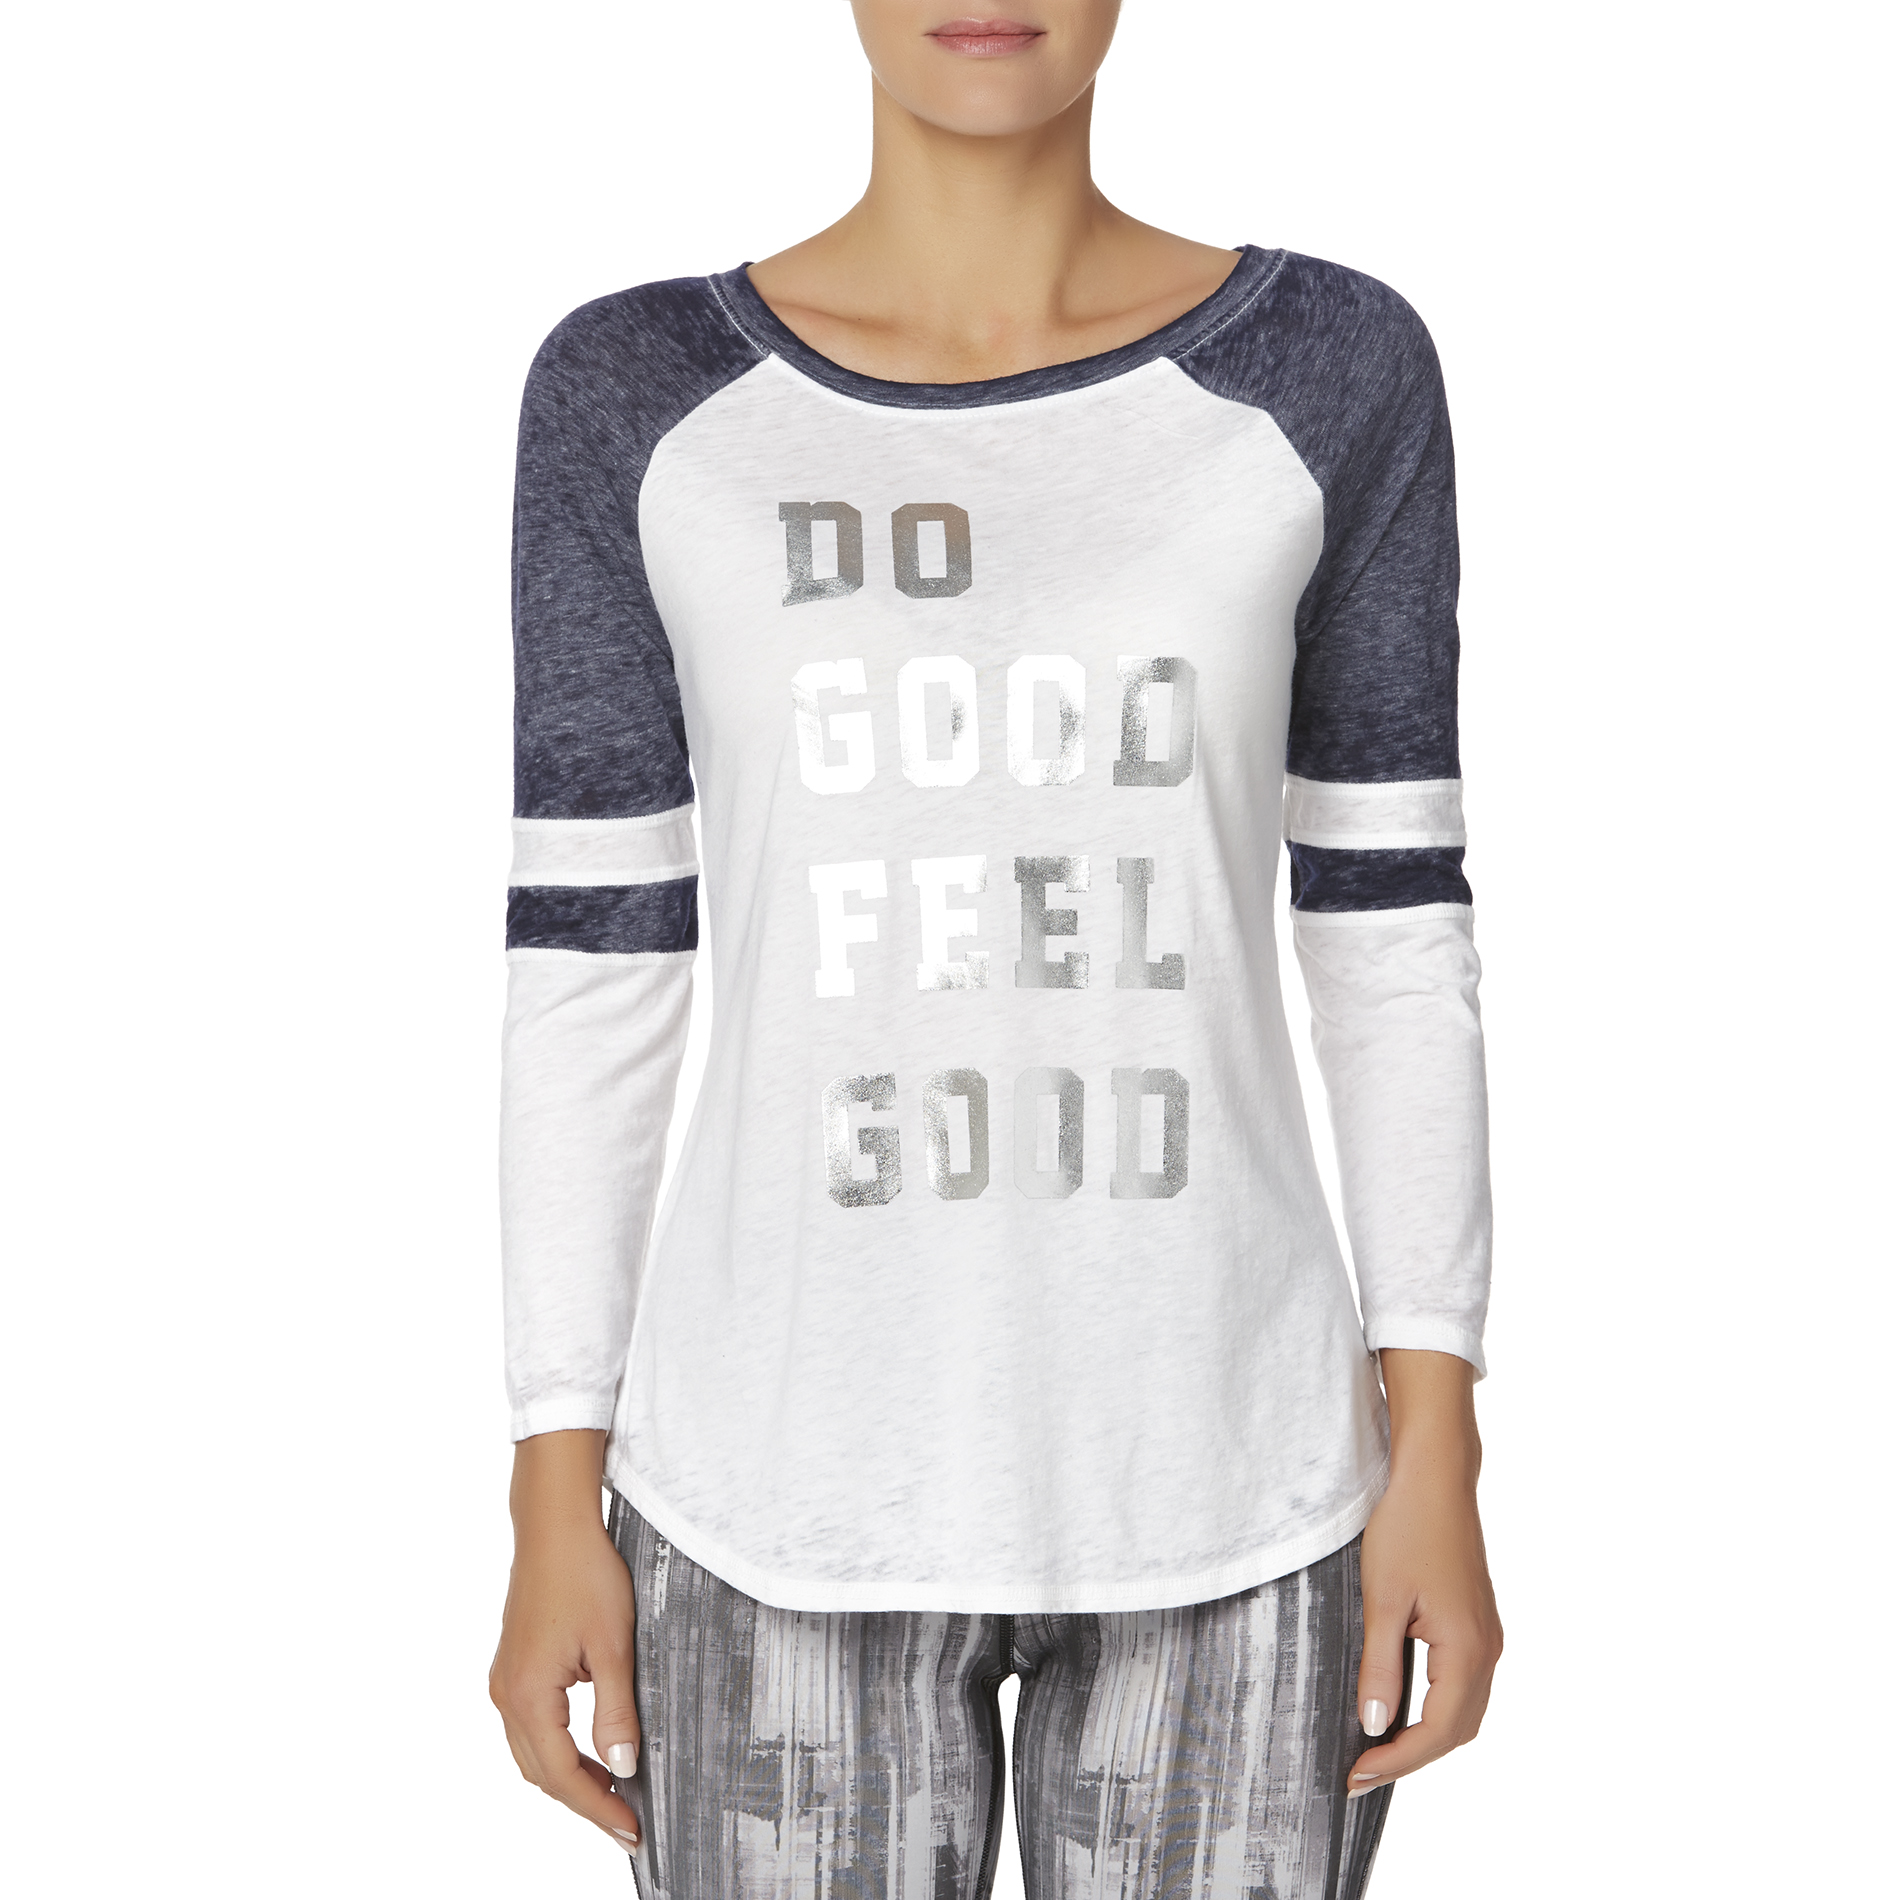 Everlast&reg; Women's Graphic T-Shirt - Do Good, Feel Good